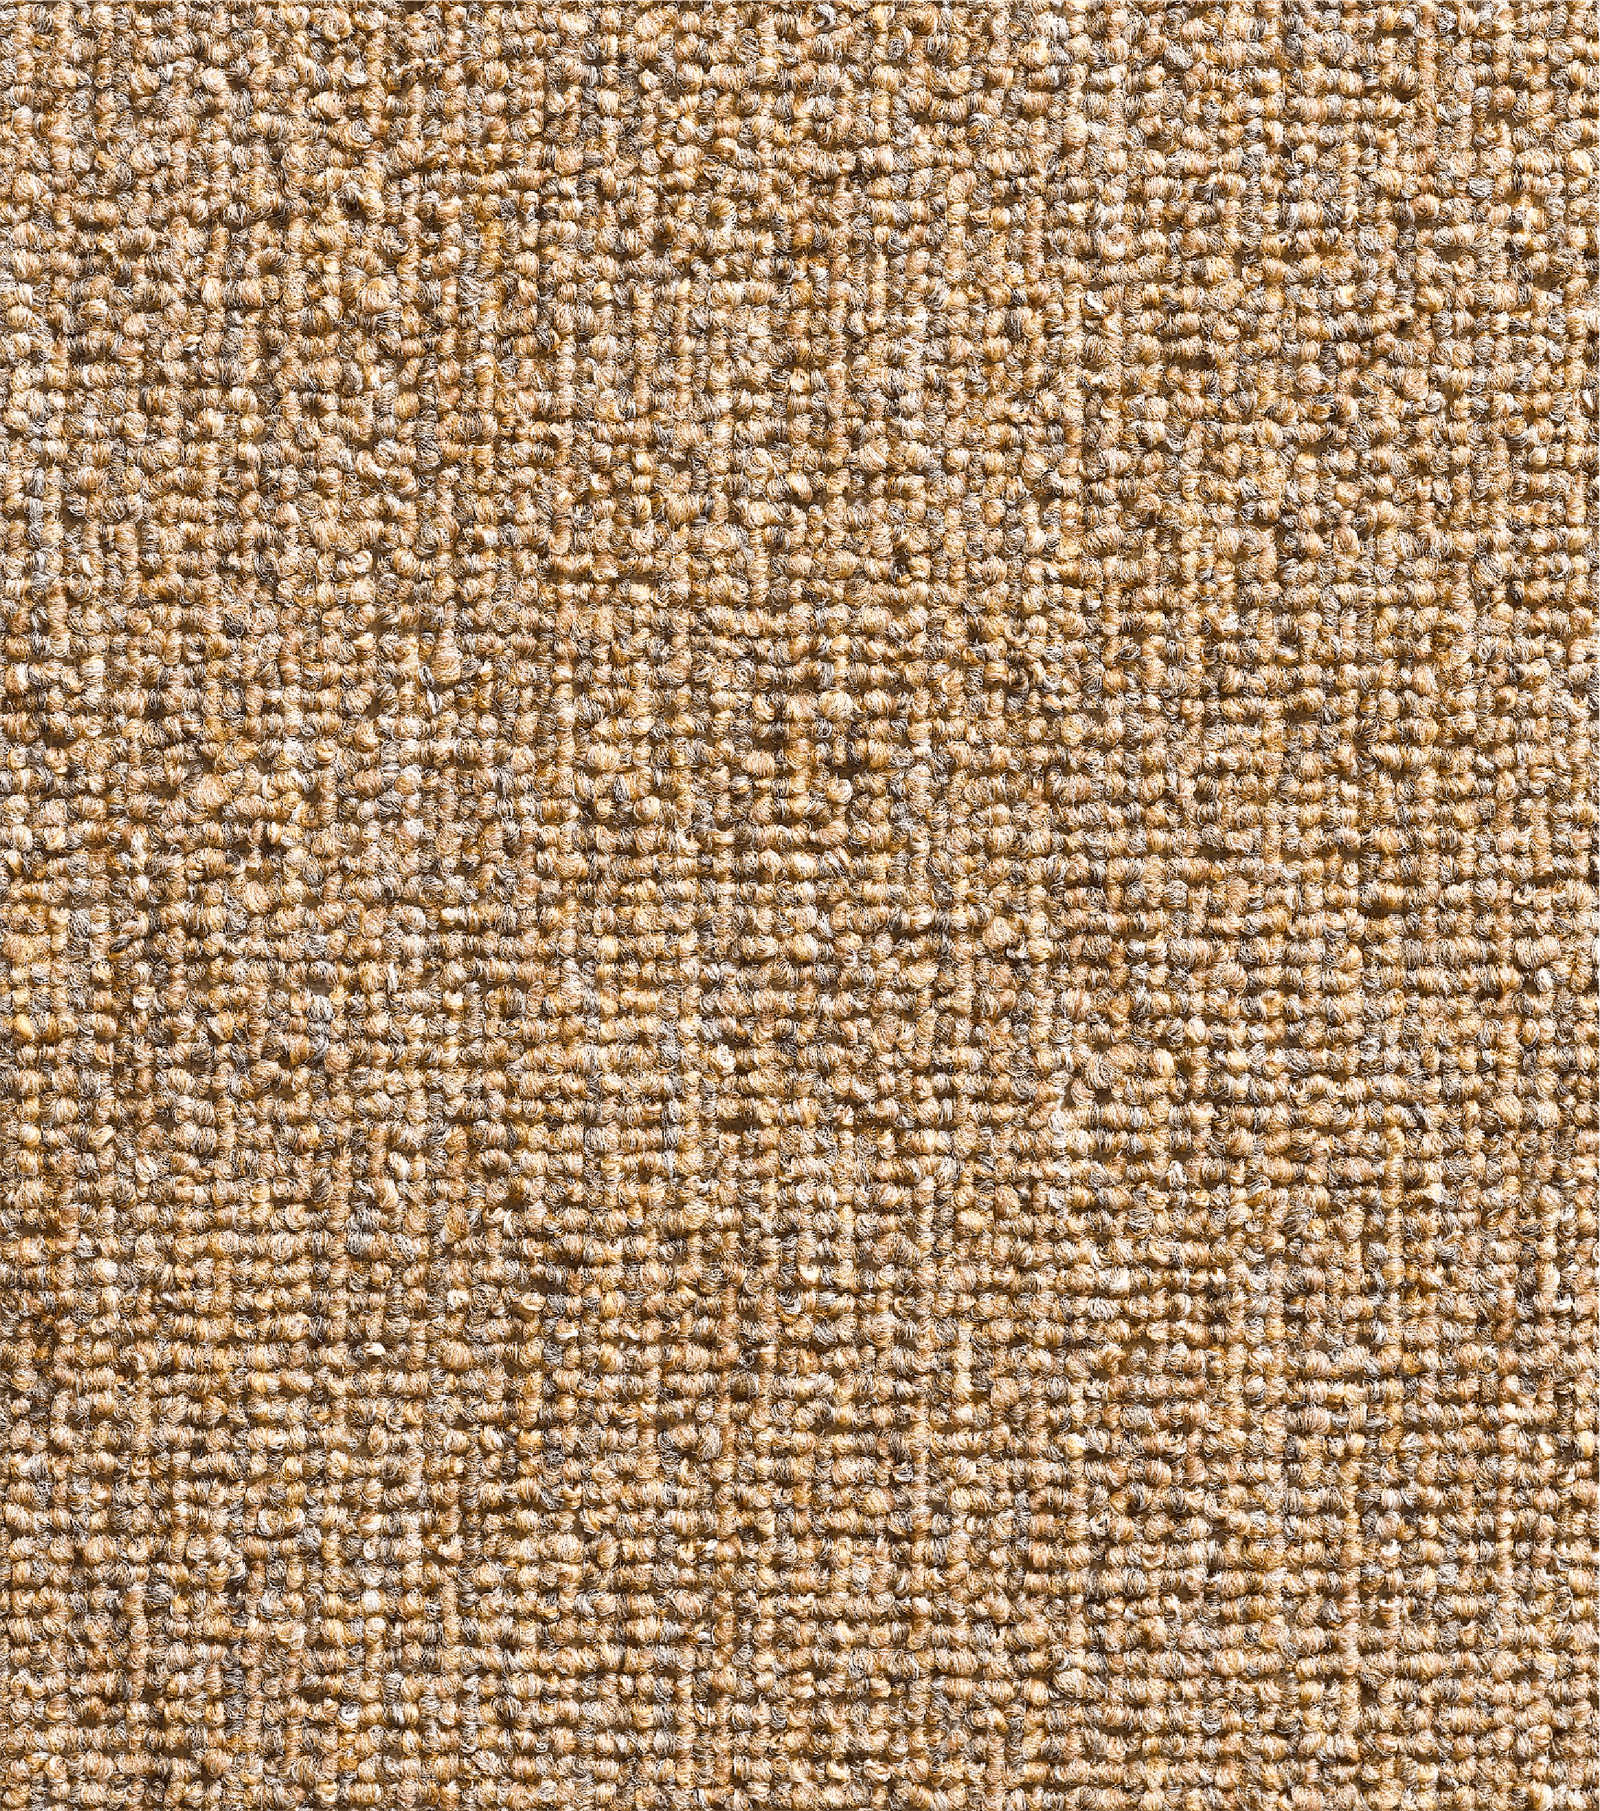 Loop Pile Carpet-MALCOM